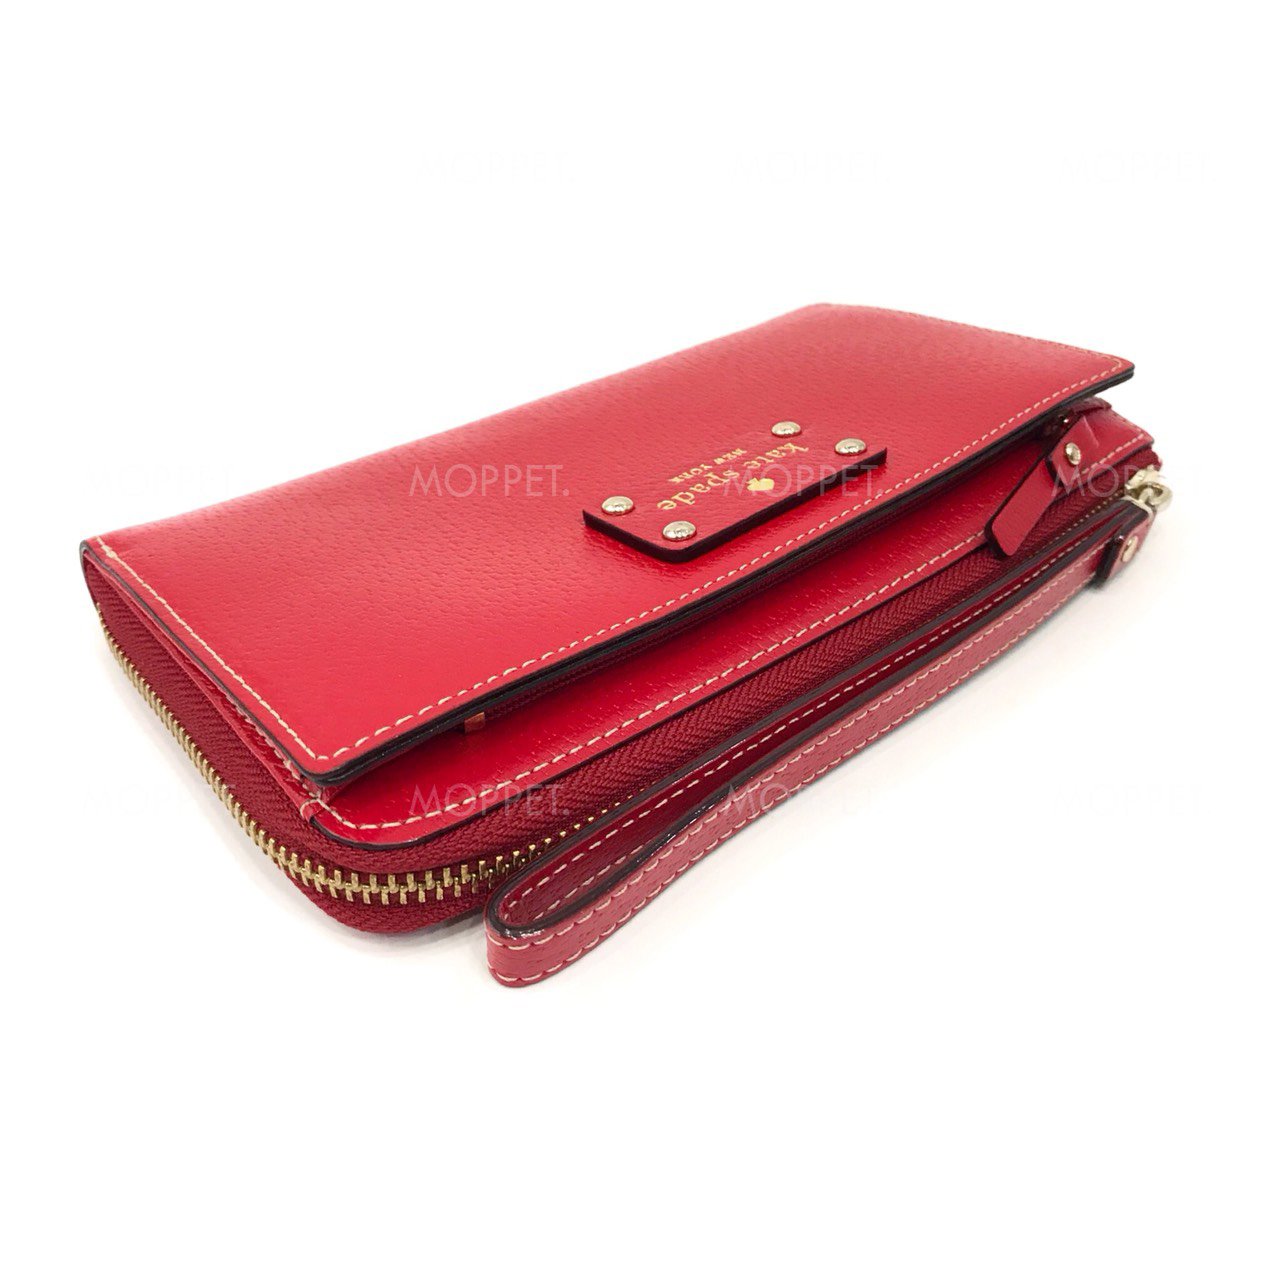 Unused Kate Spade Zip Long Wallet in Red Leather GHW - moppetbrandname